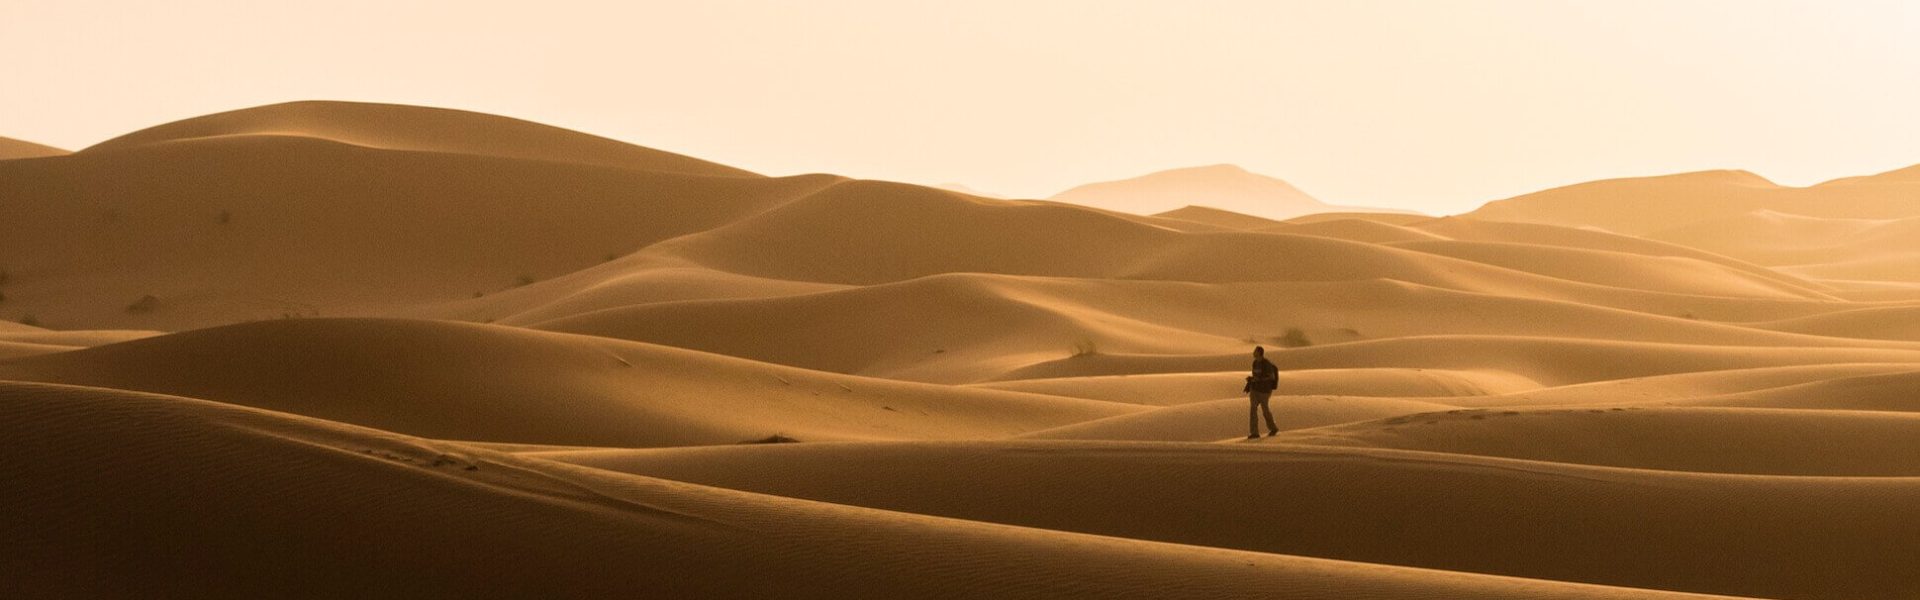 Silueta de viajero paseando sobre las dunas